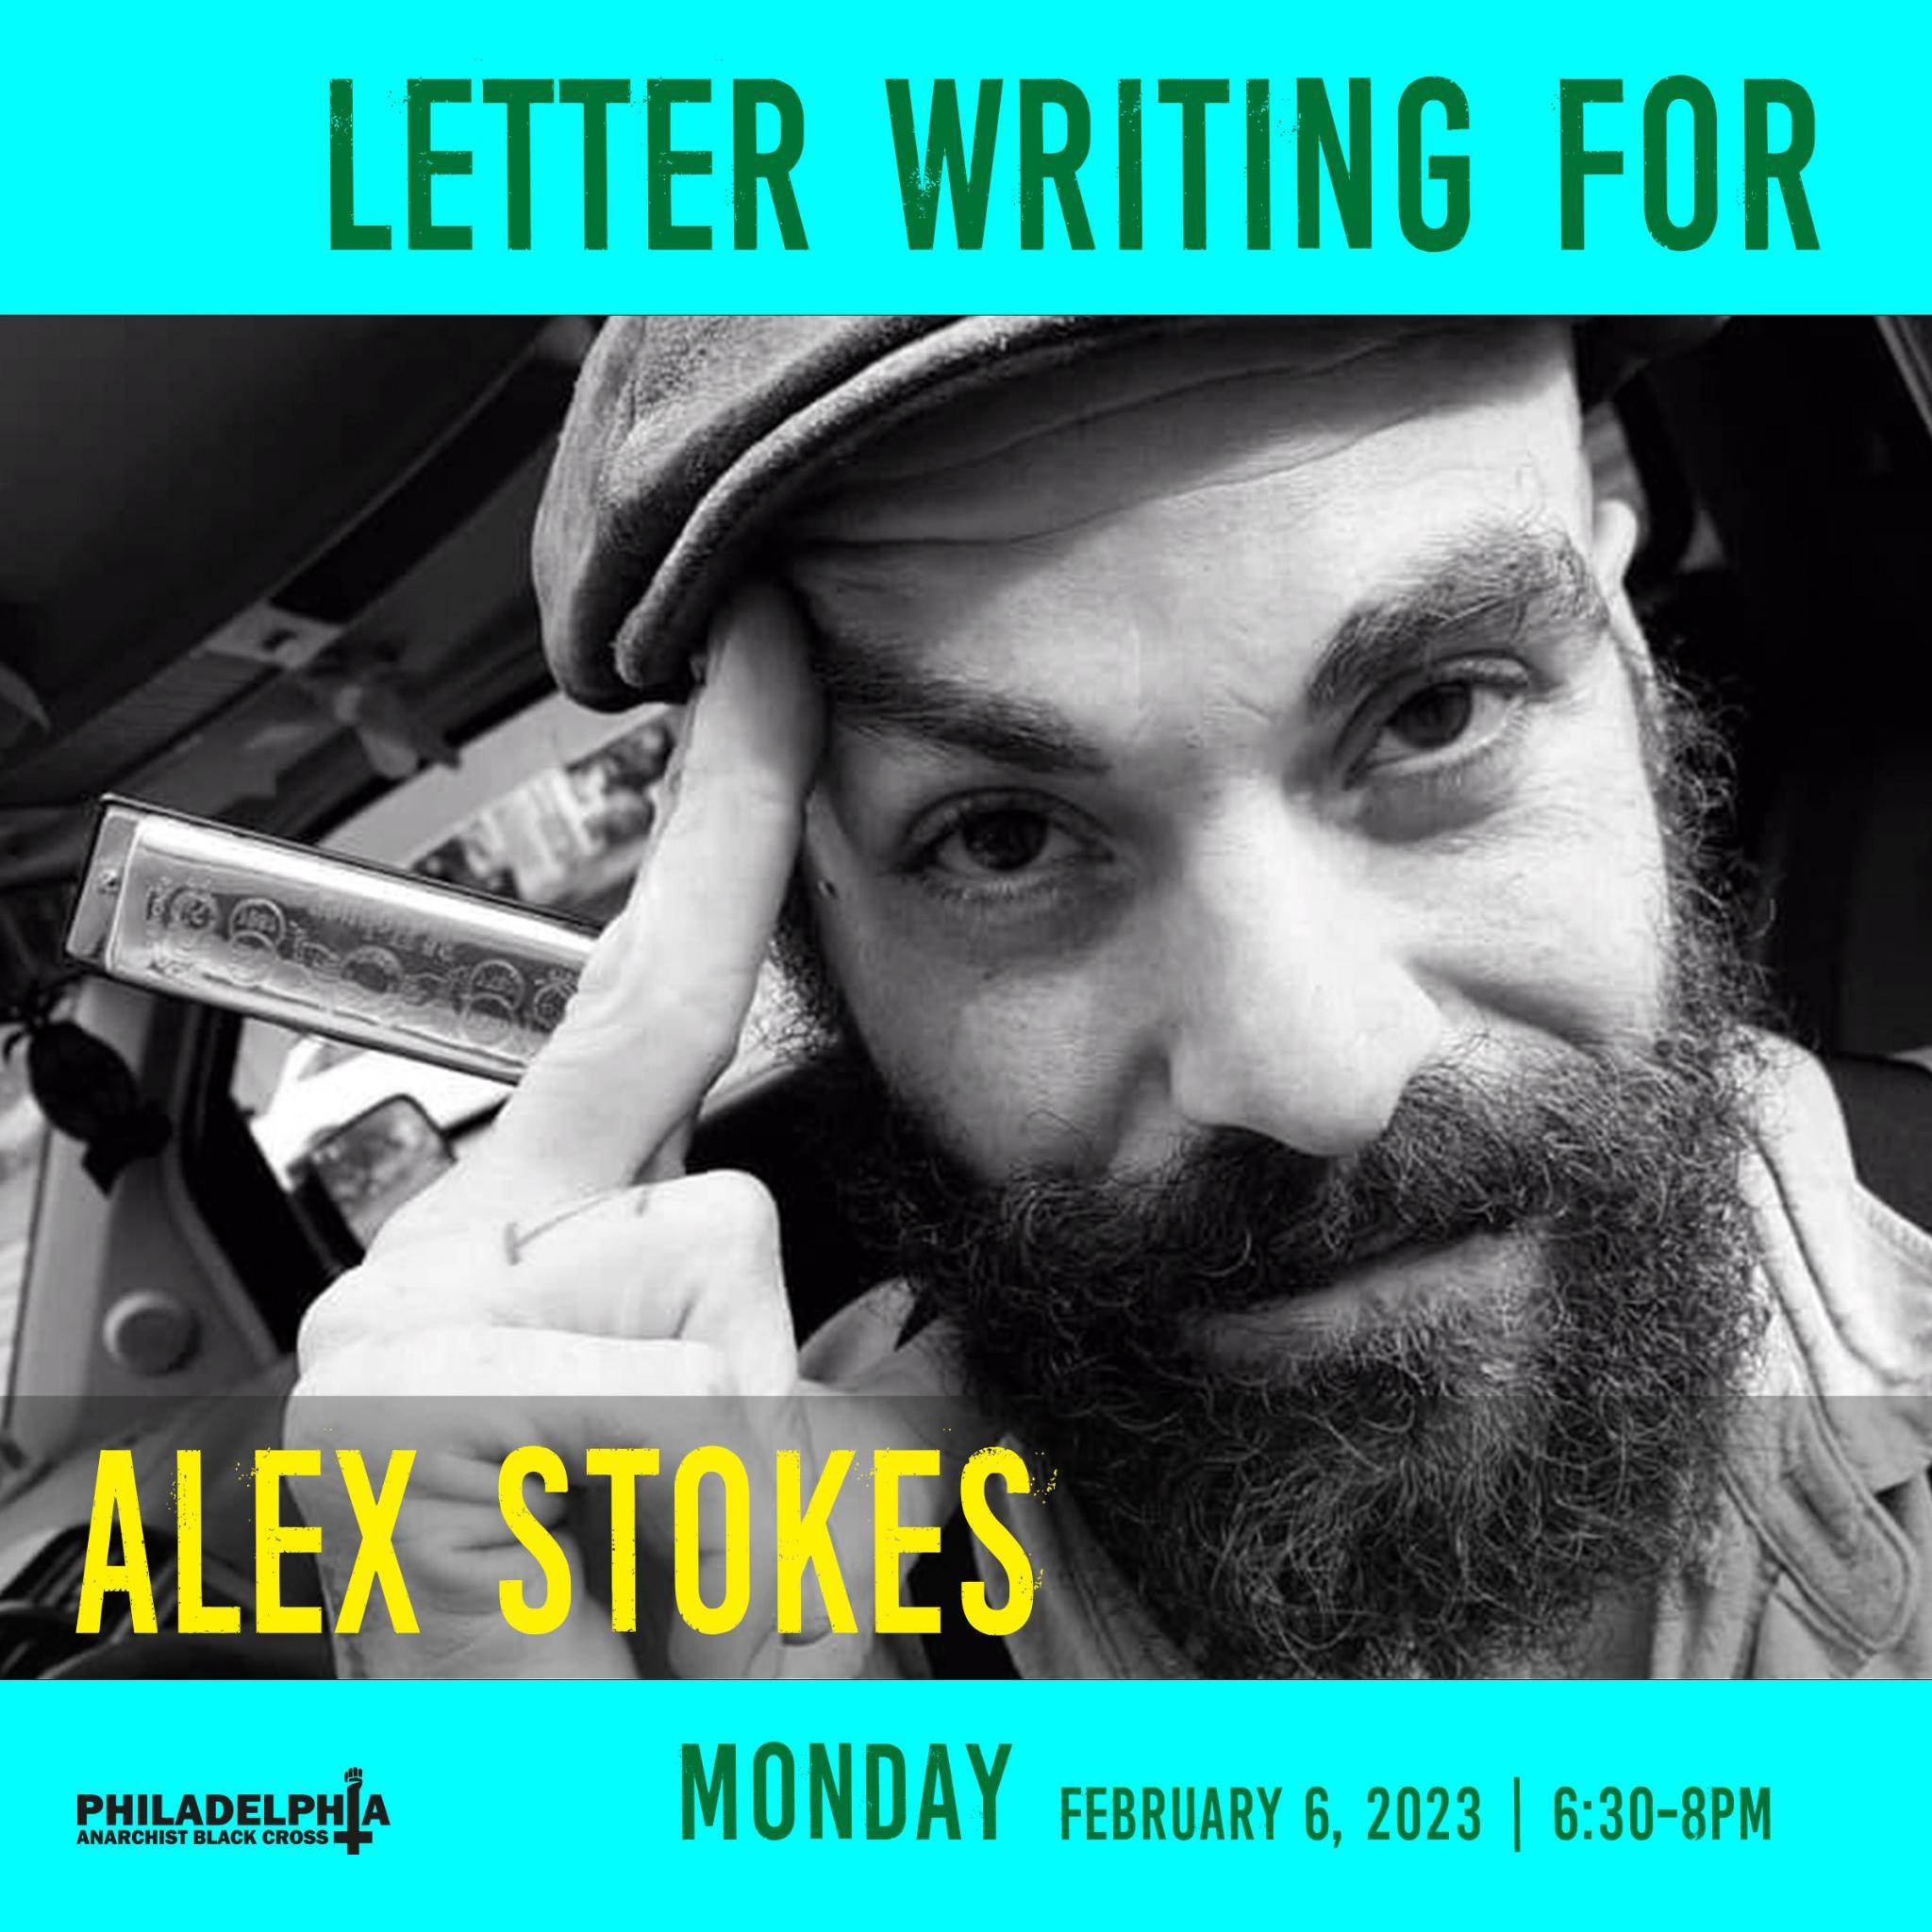 alex-stokes-letter-writing.jpg